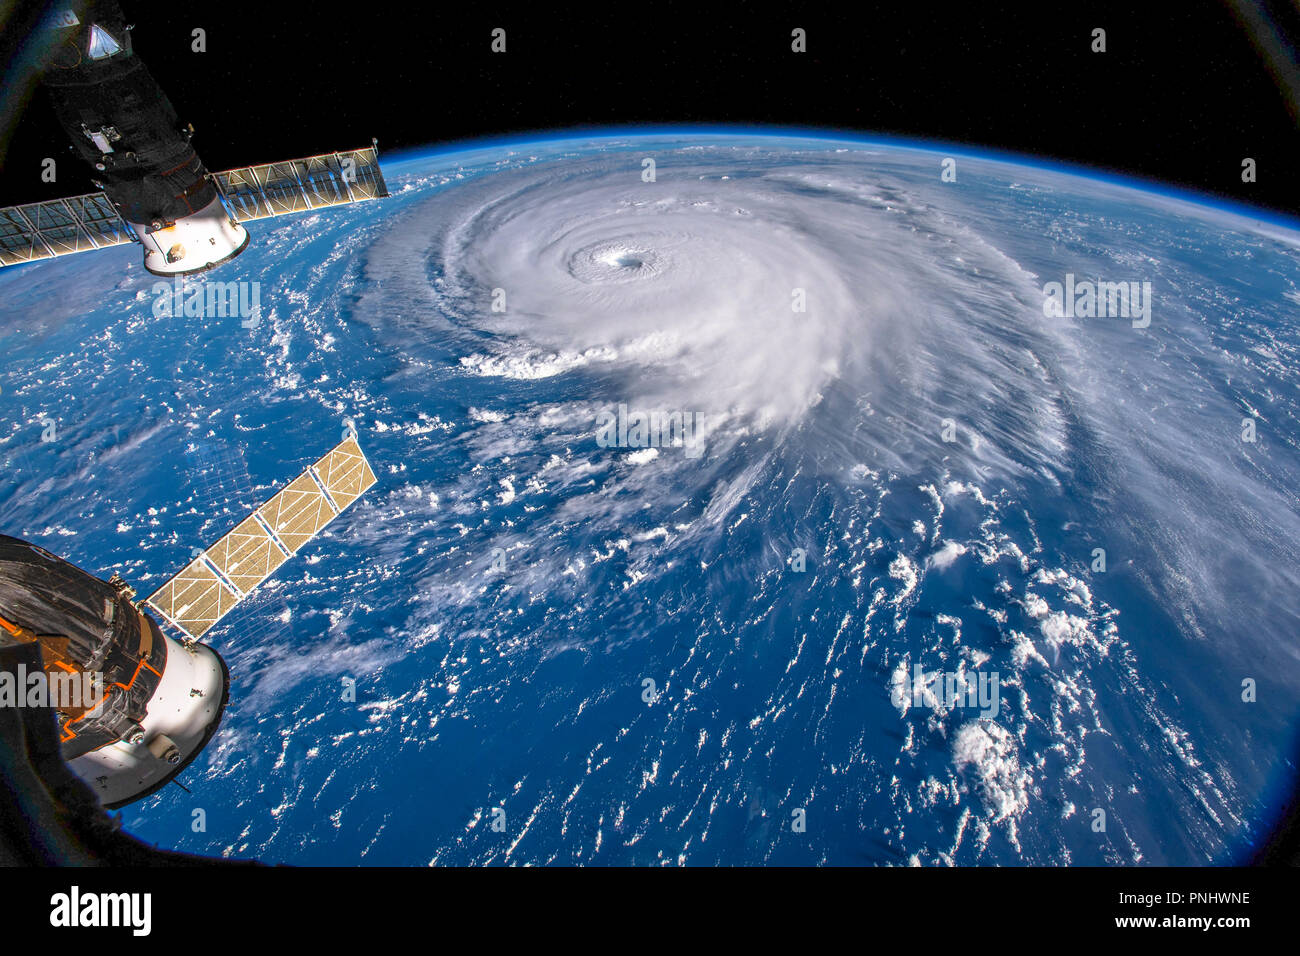 Hurrikan Florenz vom Weltraum aus gesehen von der ISS (International Space Station). Dieses Bild ist ein NASA handout. Stockfoto